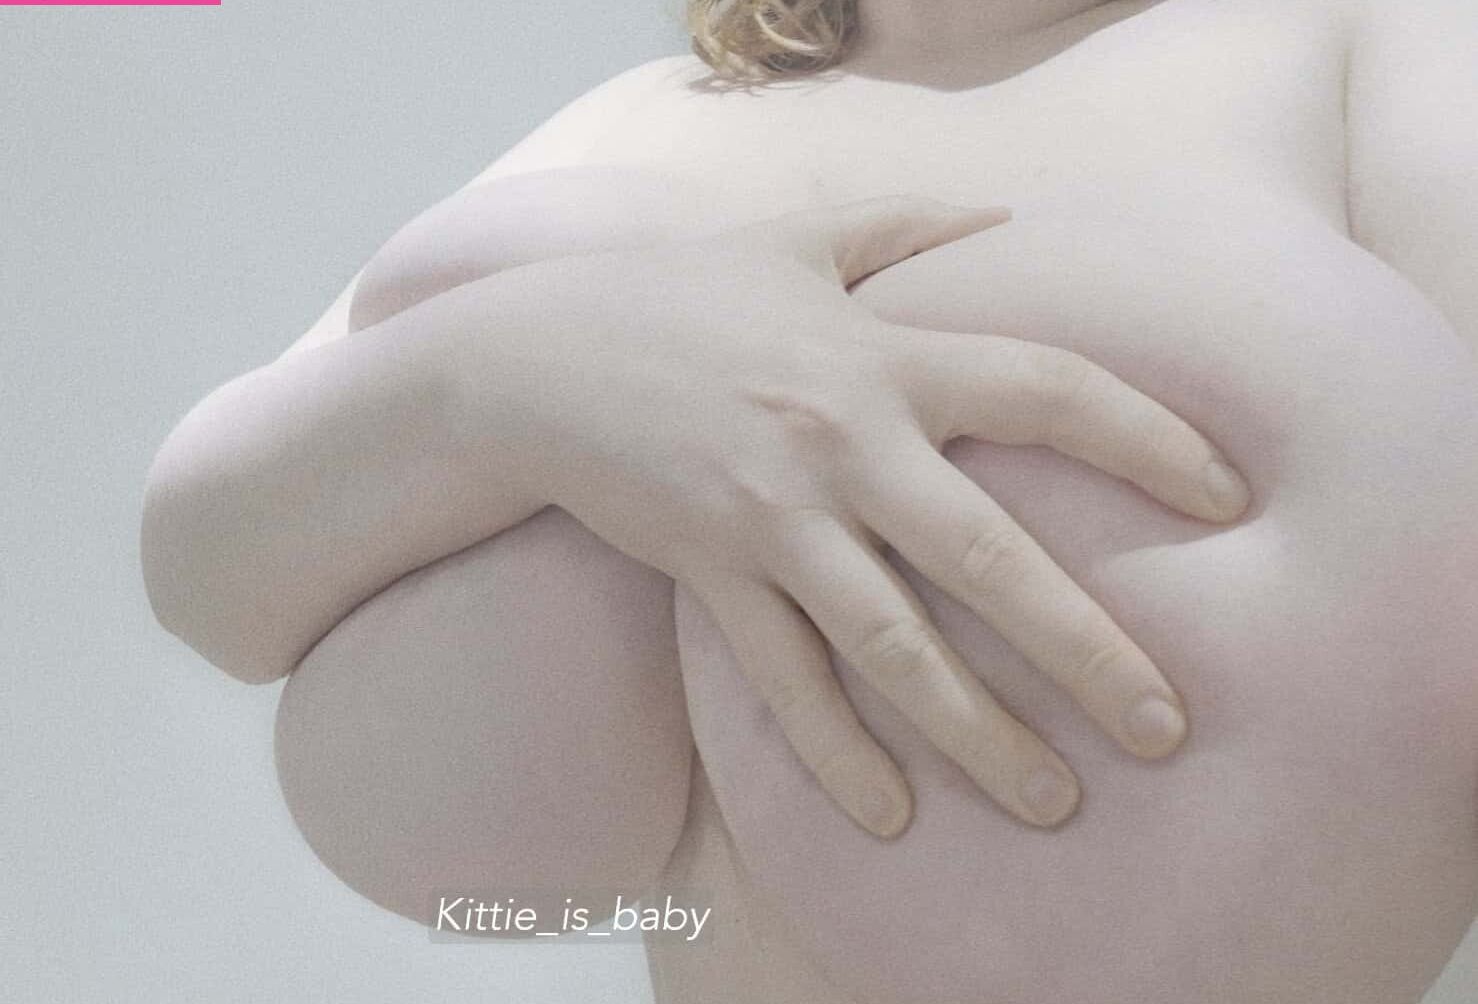 Kittie_is_baby nude #108095754